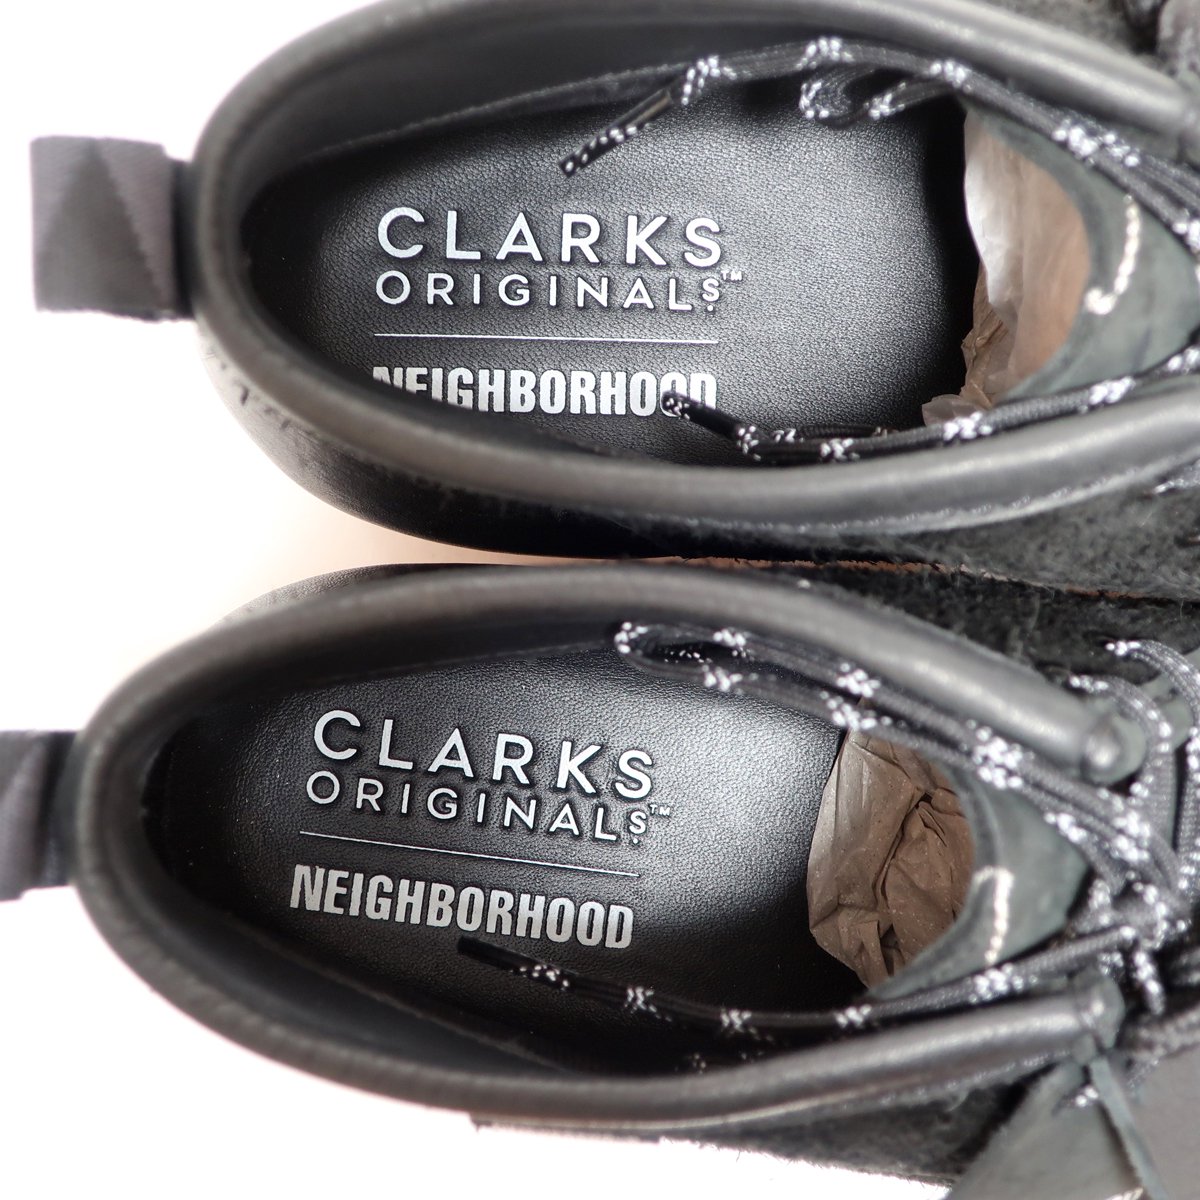 CLARKS ORIGINALS x NEIGHBORHOOD WALLABEE BOOT GTX BLACK GORE TEX ...